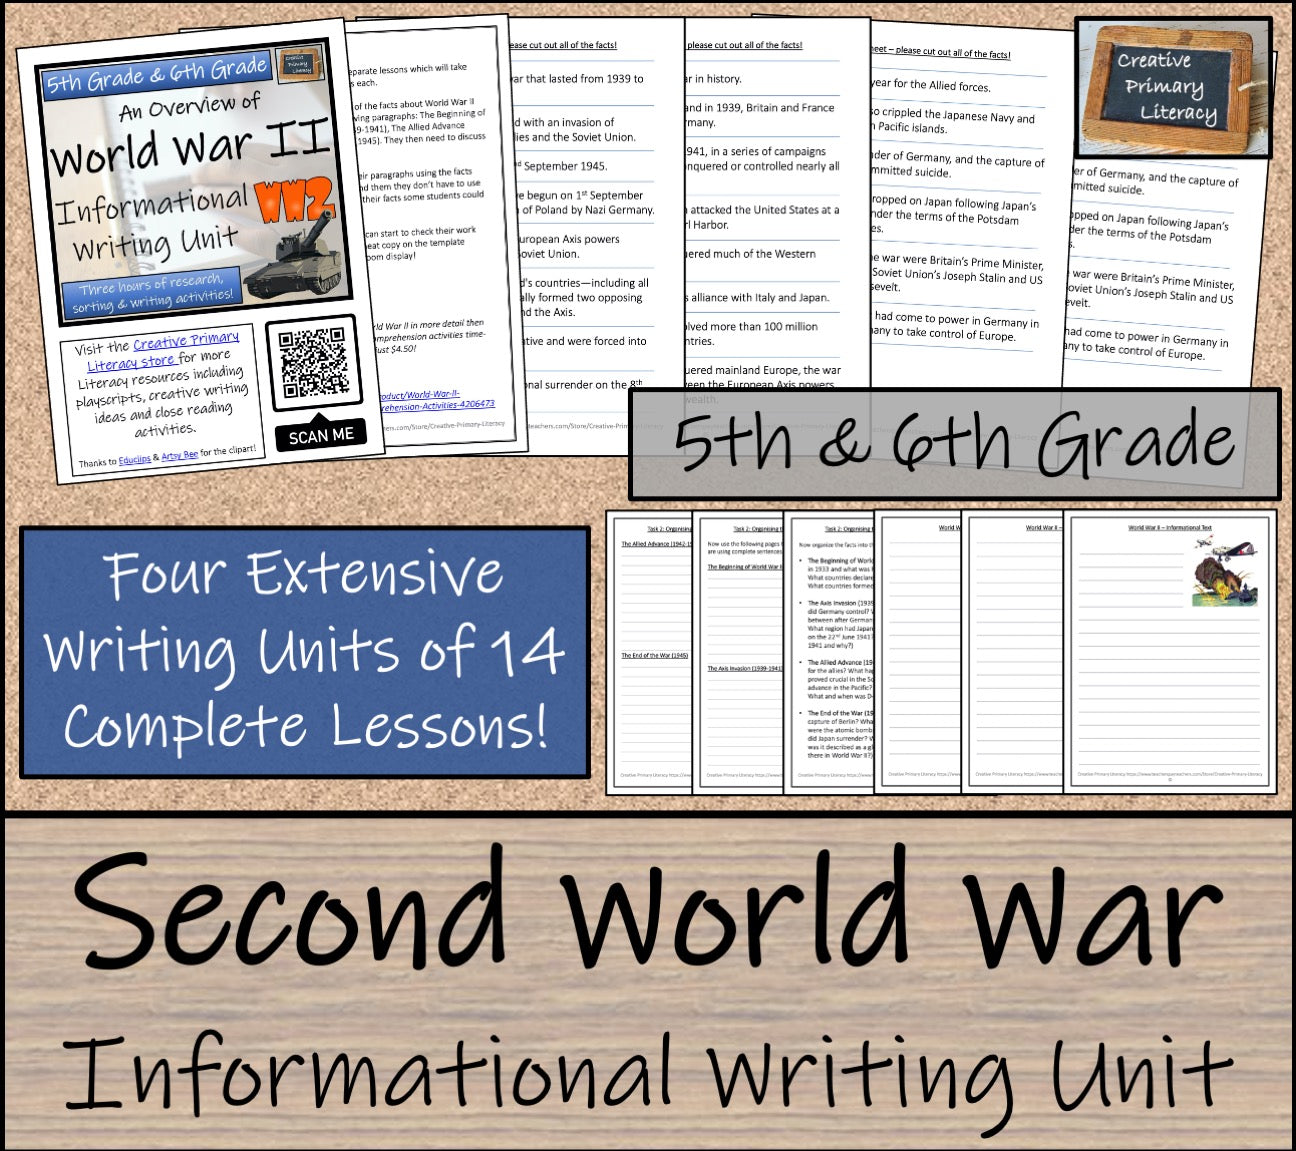 Emergency Sub Plans | World War II Bundle | 5th Grade & 6th Grade